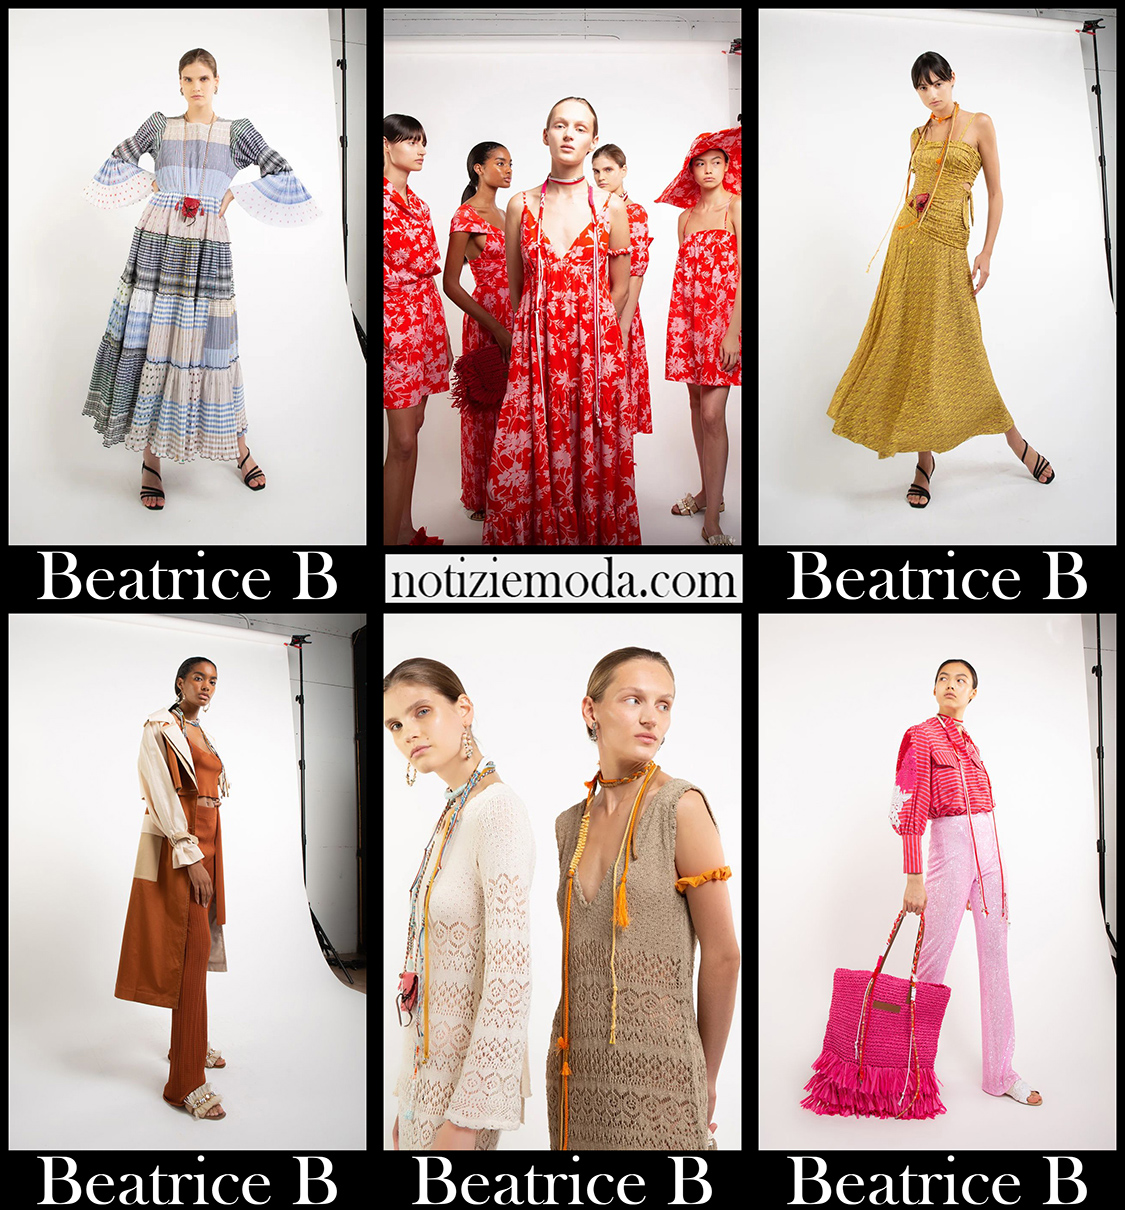 Collezione Beatrice B primavera estate 2021 moda donna